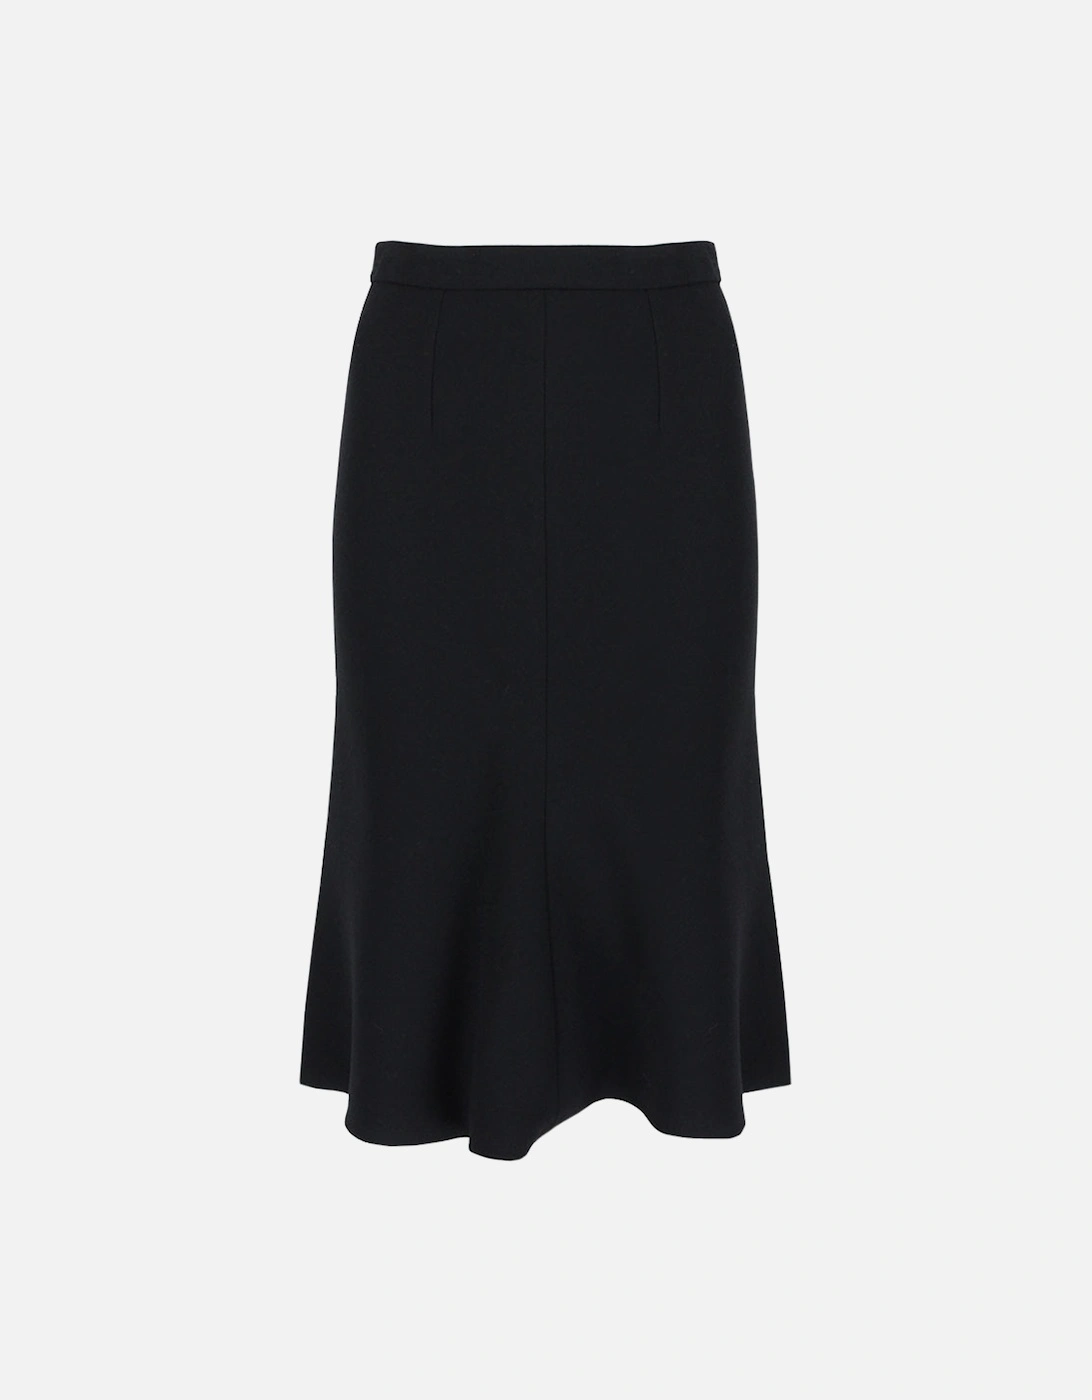 Skirt, 7 of 6